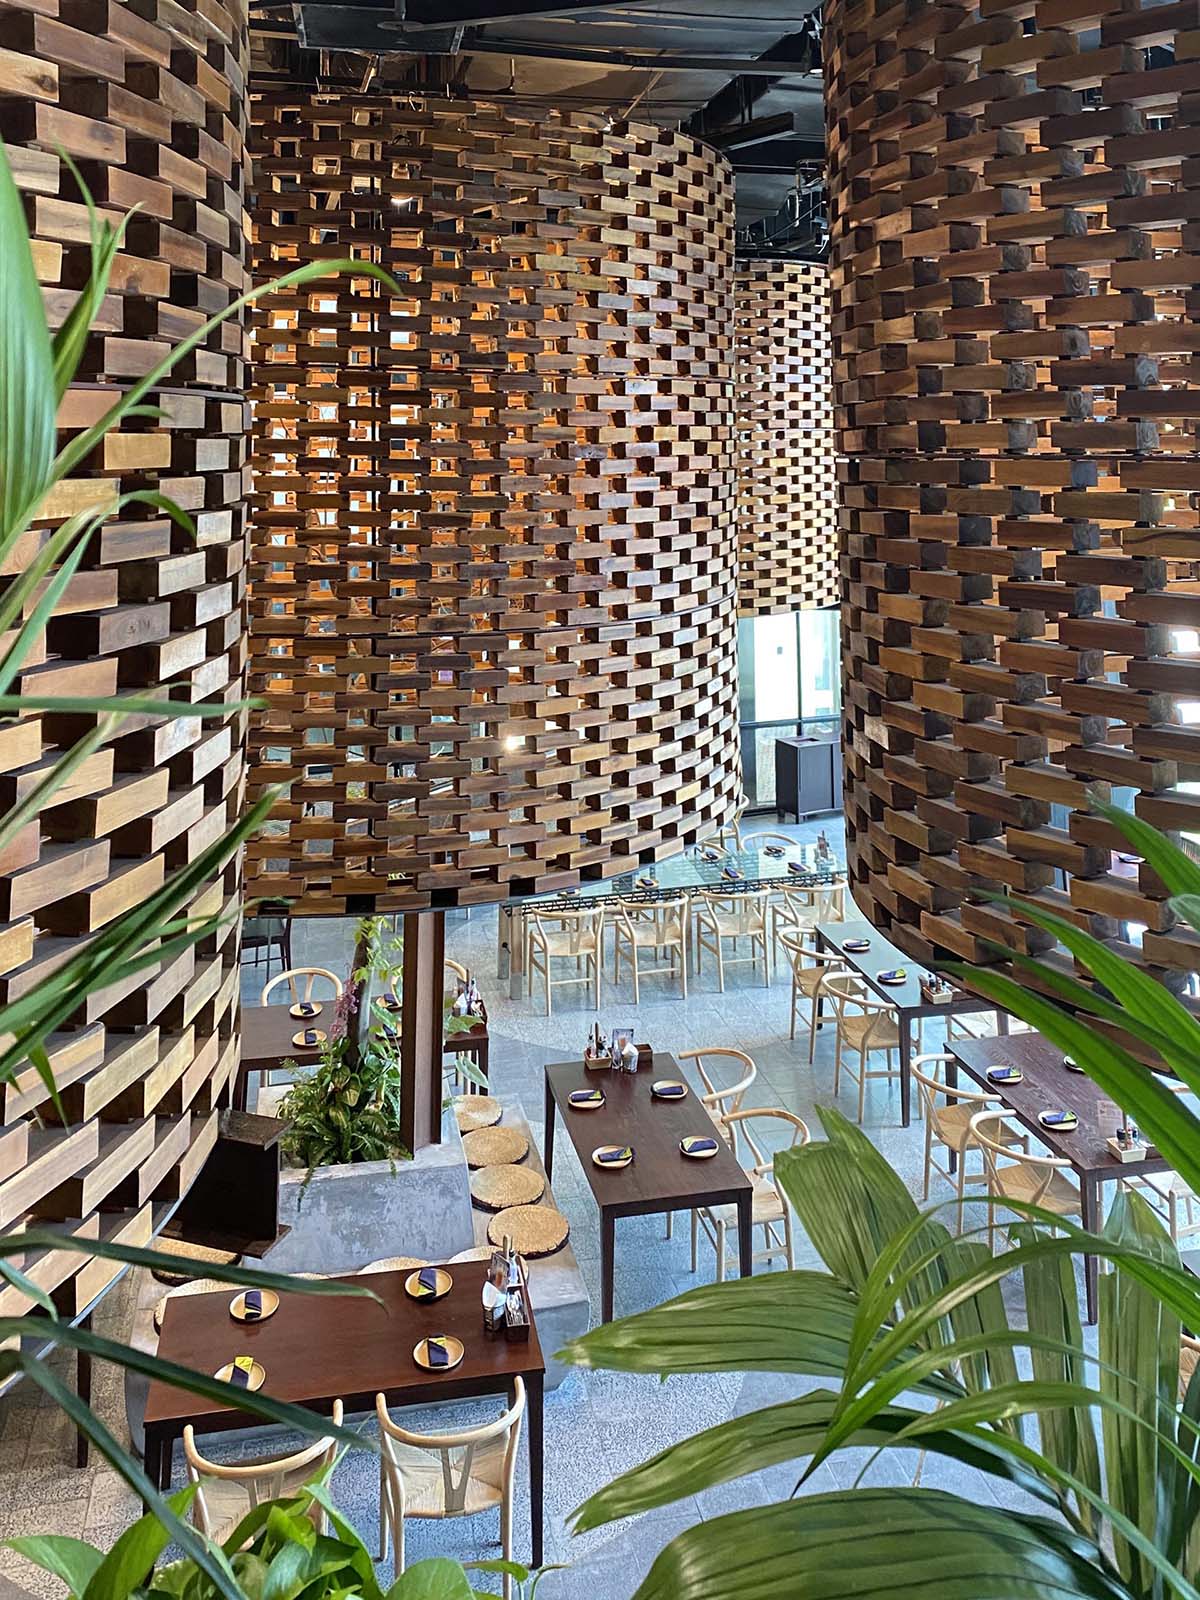 Современный интерьер ресторана с большими скульптурными цилиндрами из деревянных кирпичей и современной деревянной мебелью.